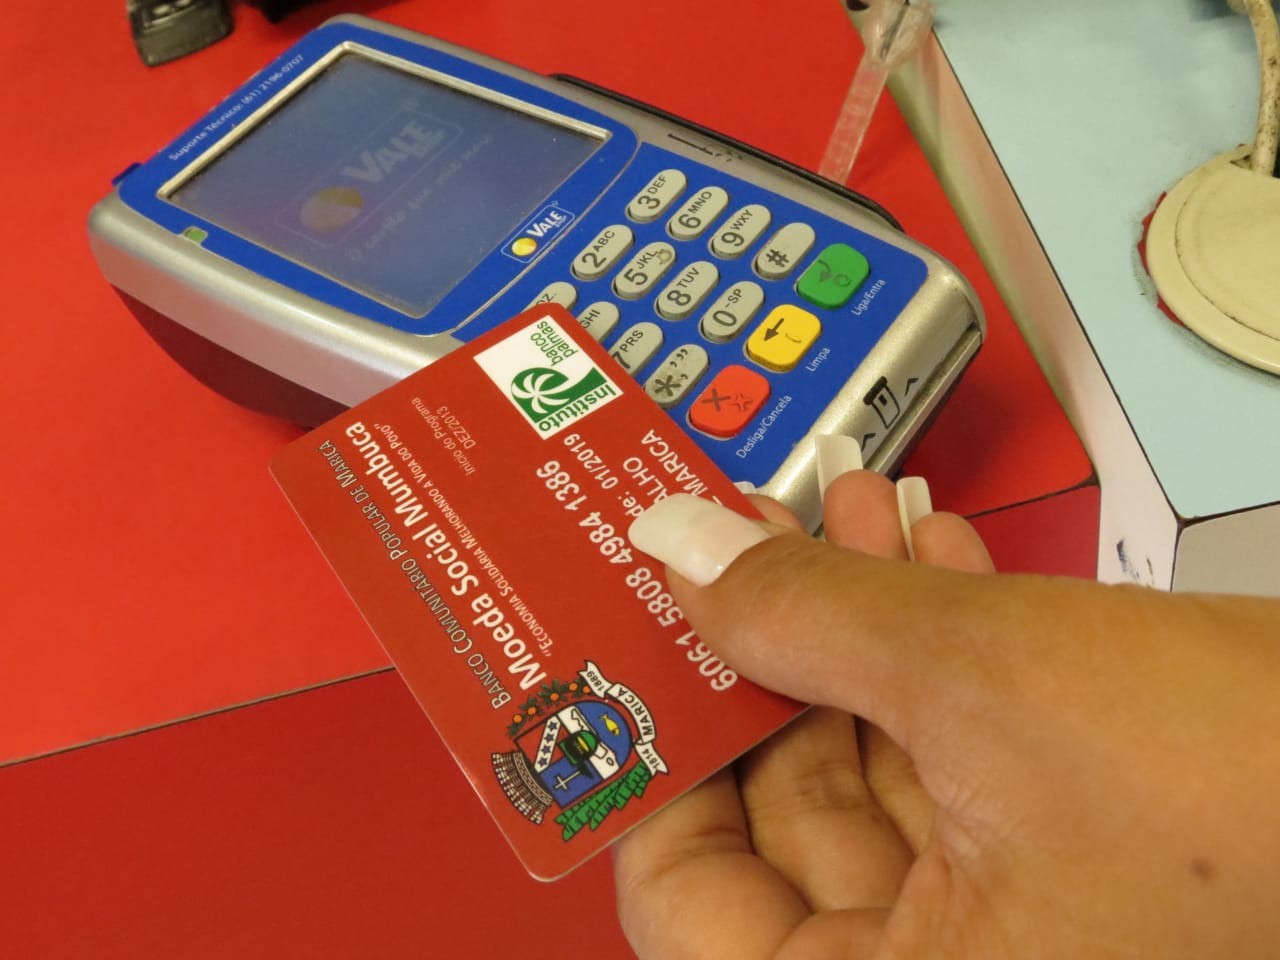 Novos beneficiários do 'Renda Básica de Cidadania' começam a receber o cartão Mumbuca em Maricá 